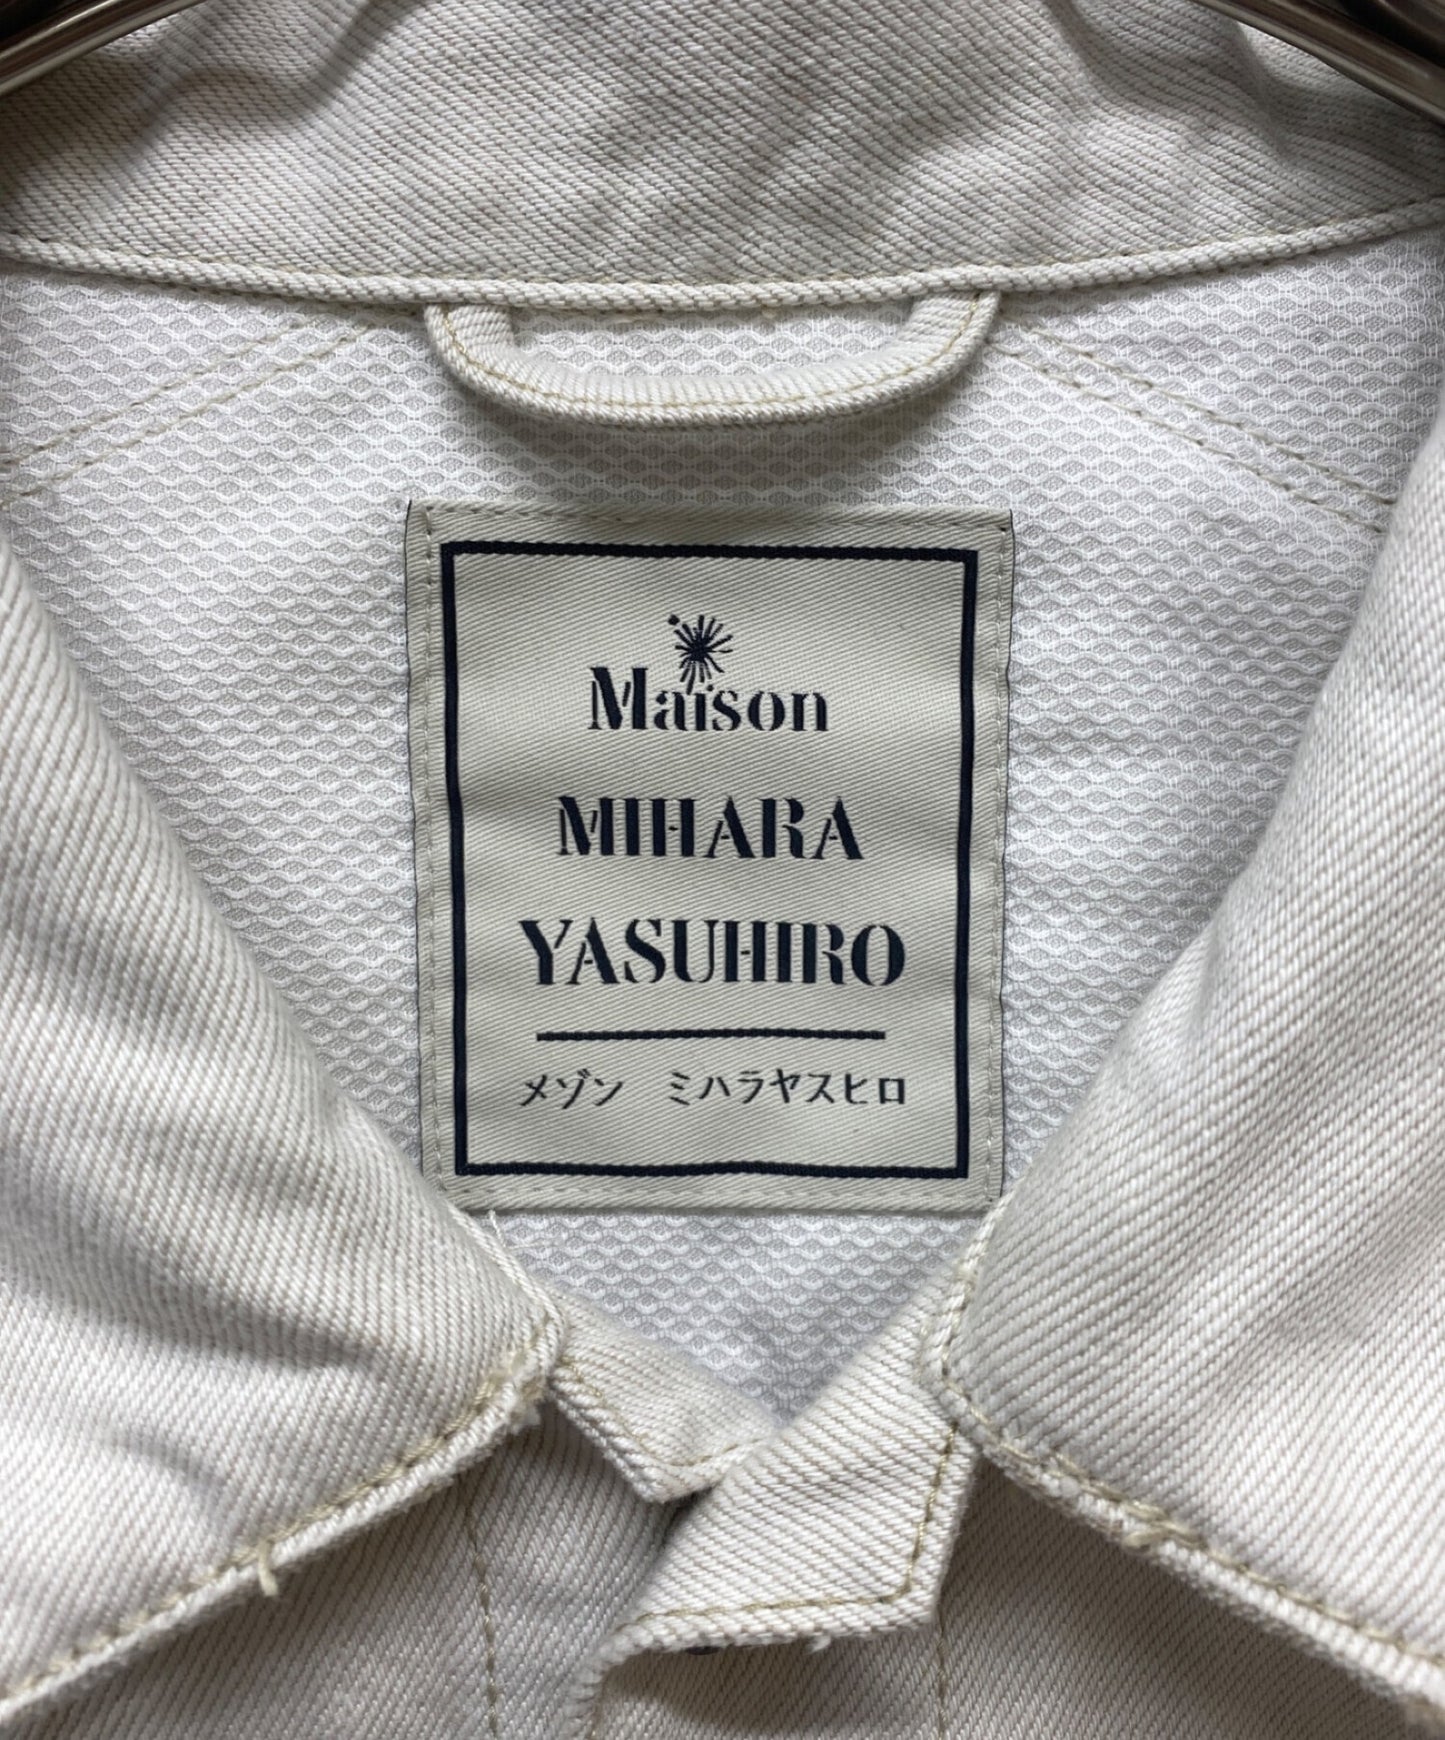 Maison Mihara Yasuhiro ปรับขนาดเสื้อรวมแจ็คเก็ตยีนส์ b08bl171